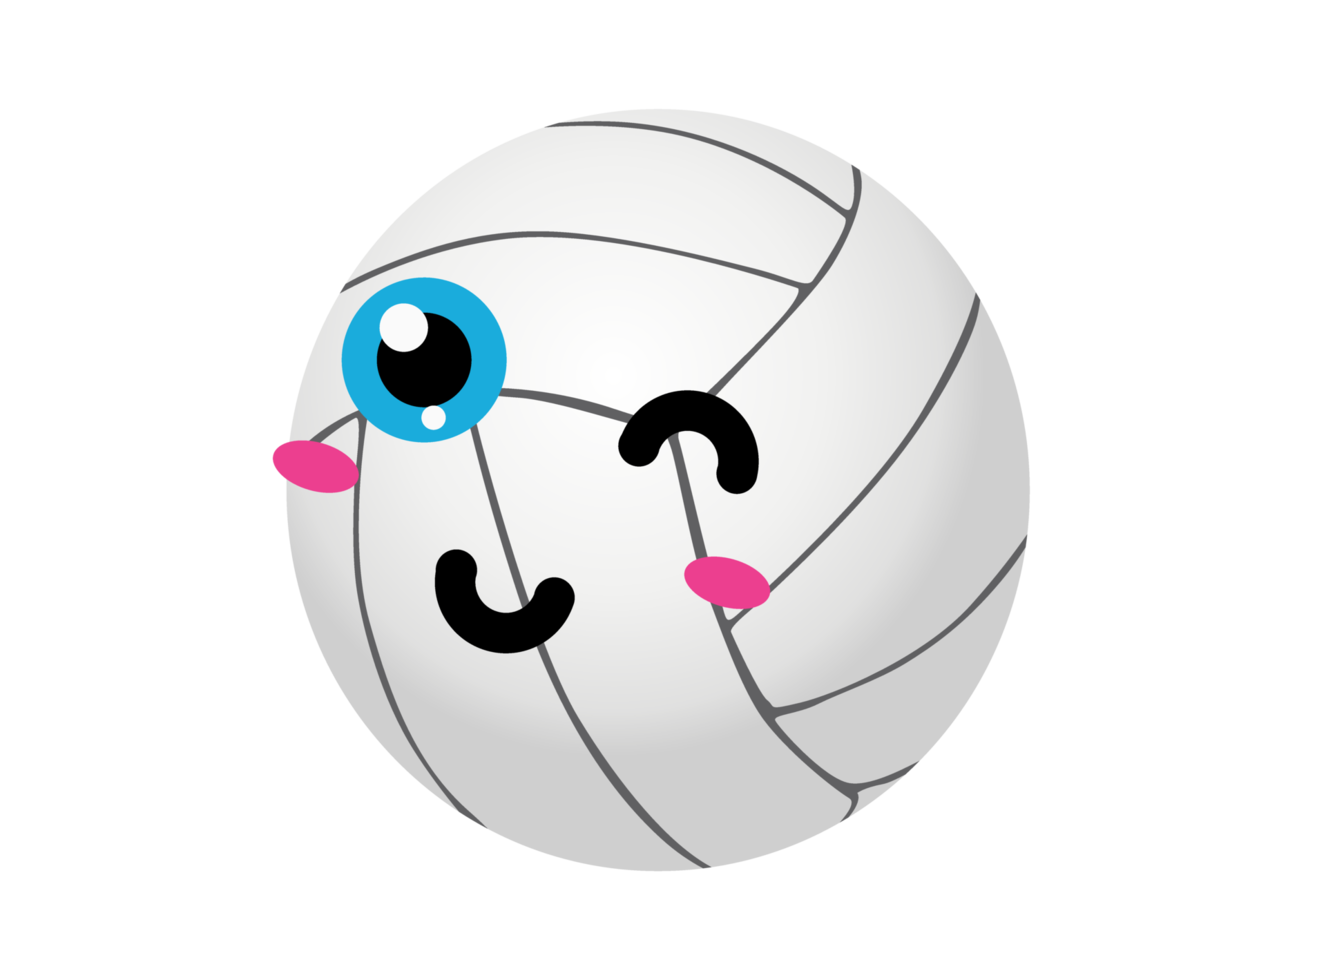 Free lindo personaje de dibujos animados de pelota - voleibol 13078426 PNG  with Transparent Background